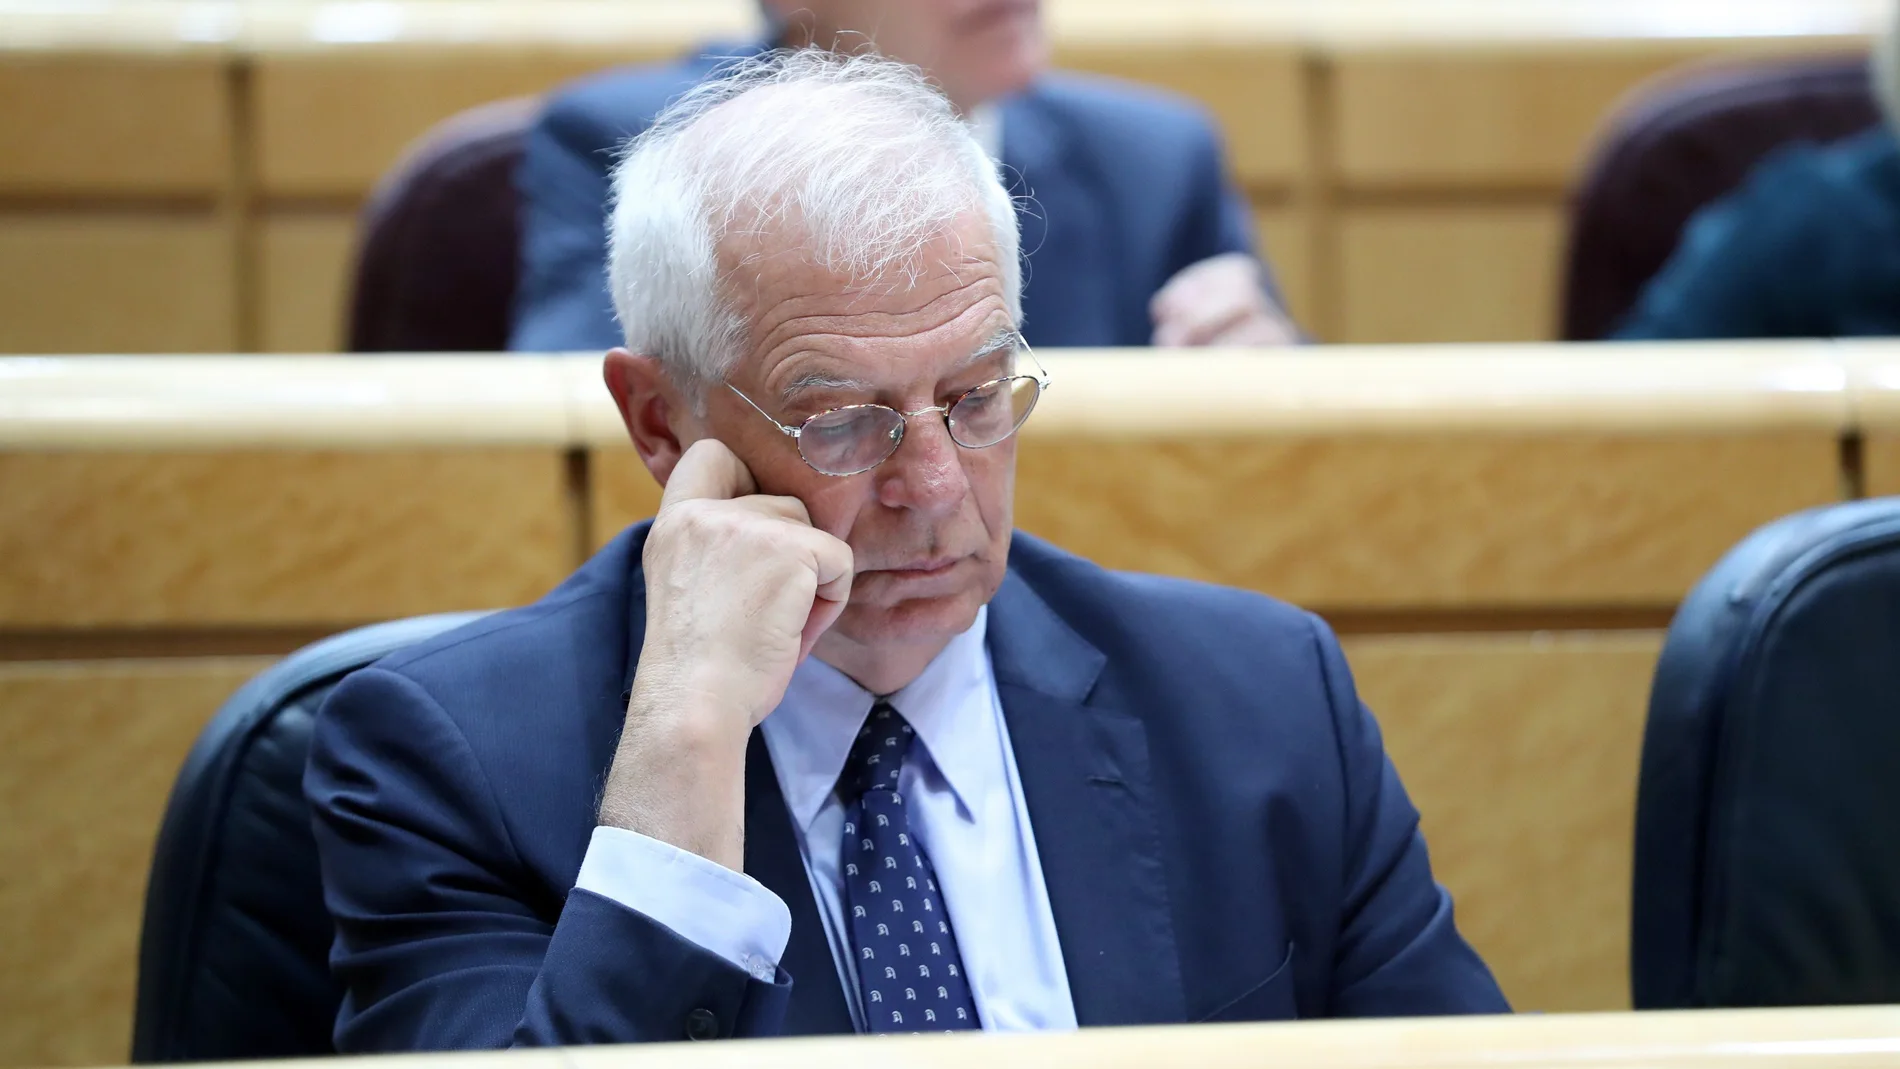 El ministro de Exteriores, Josep Borrell